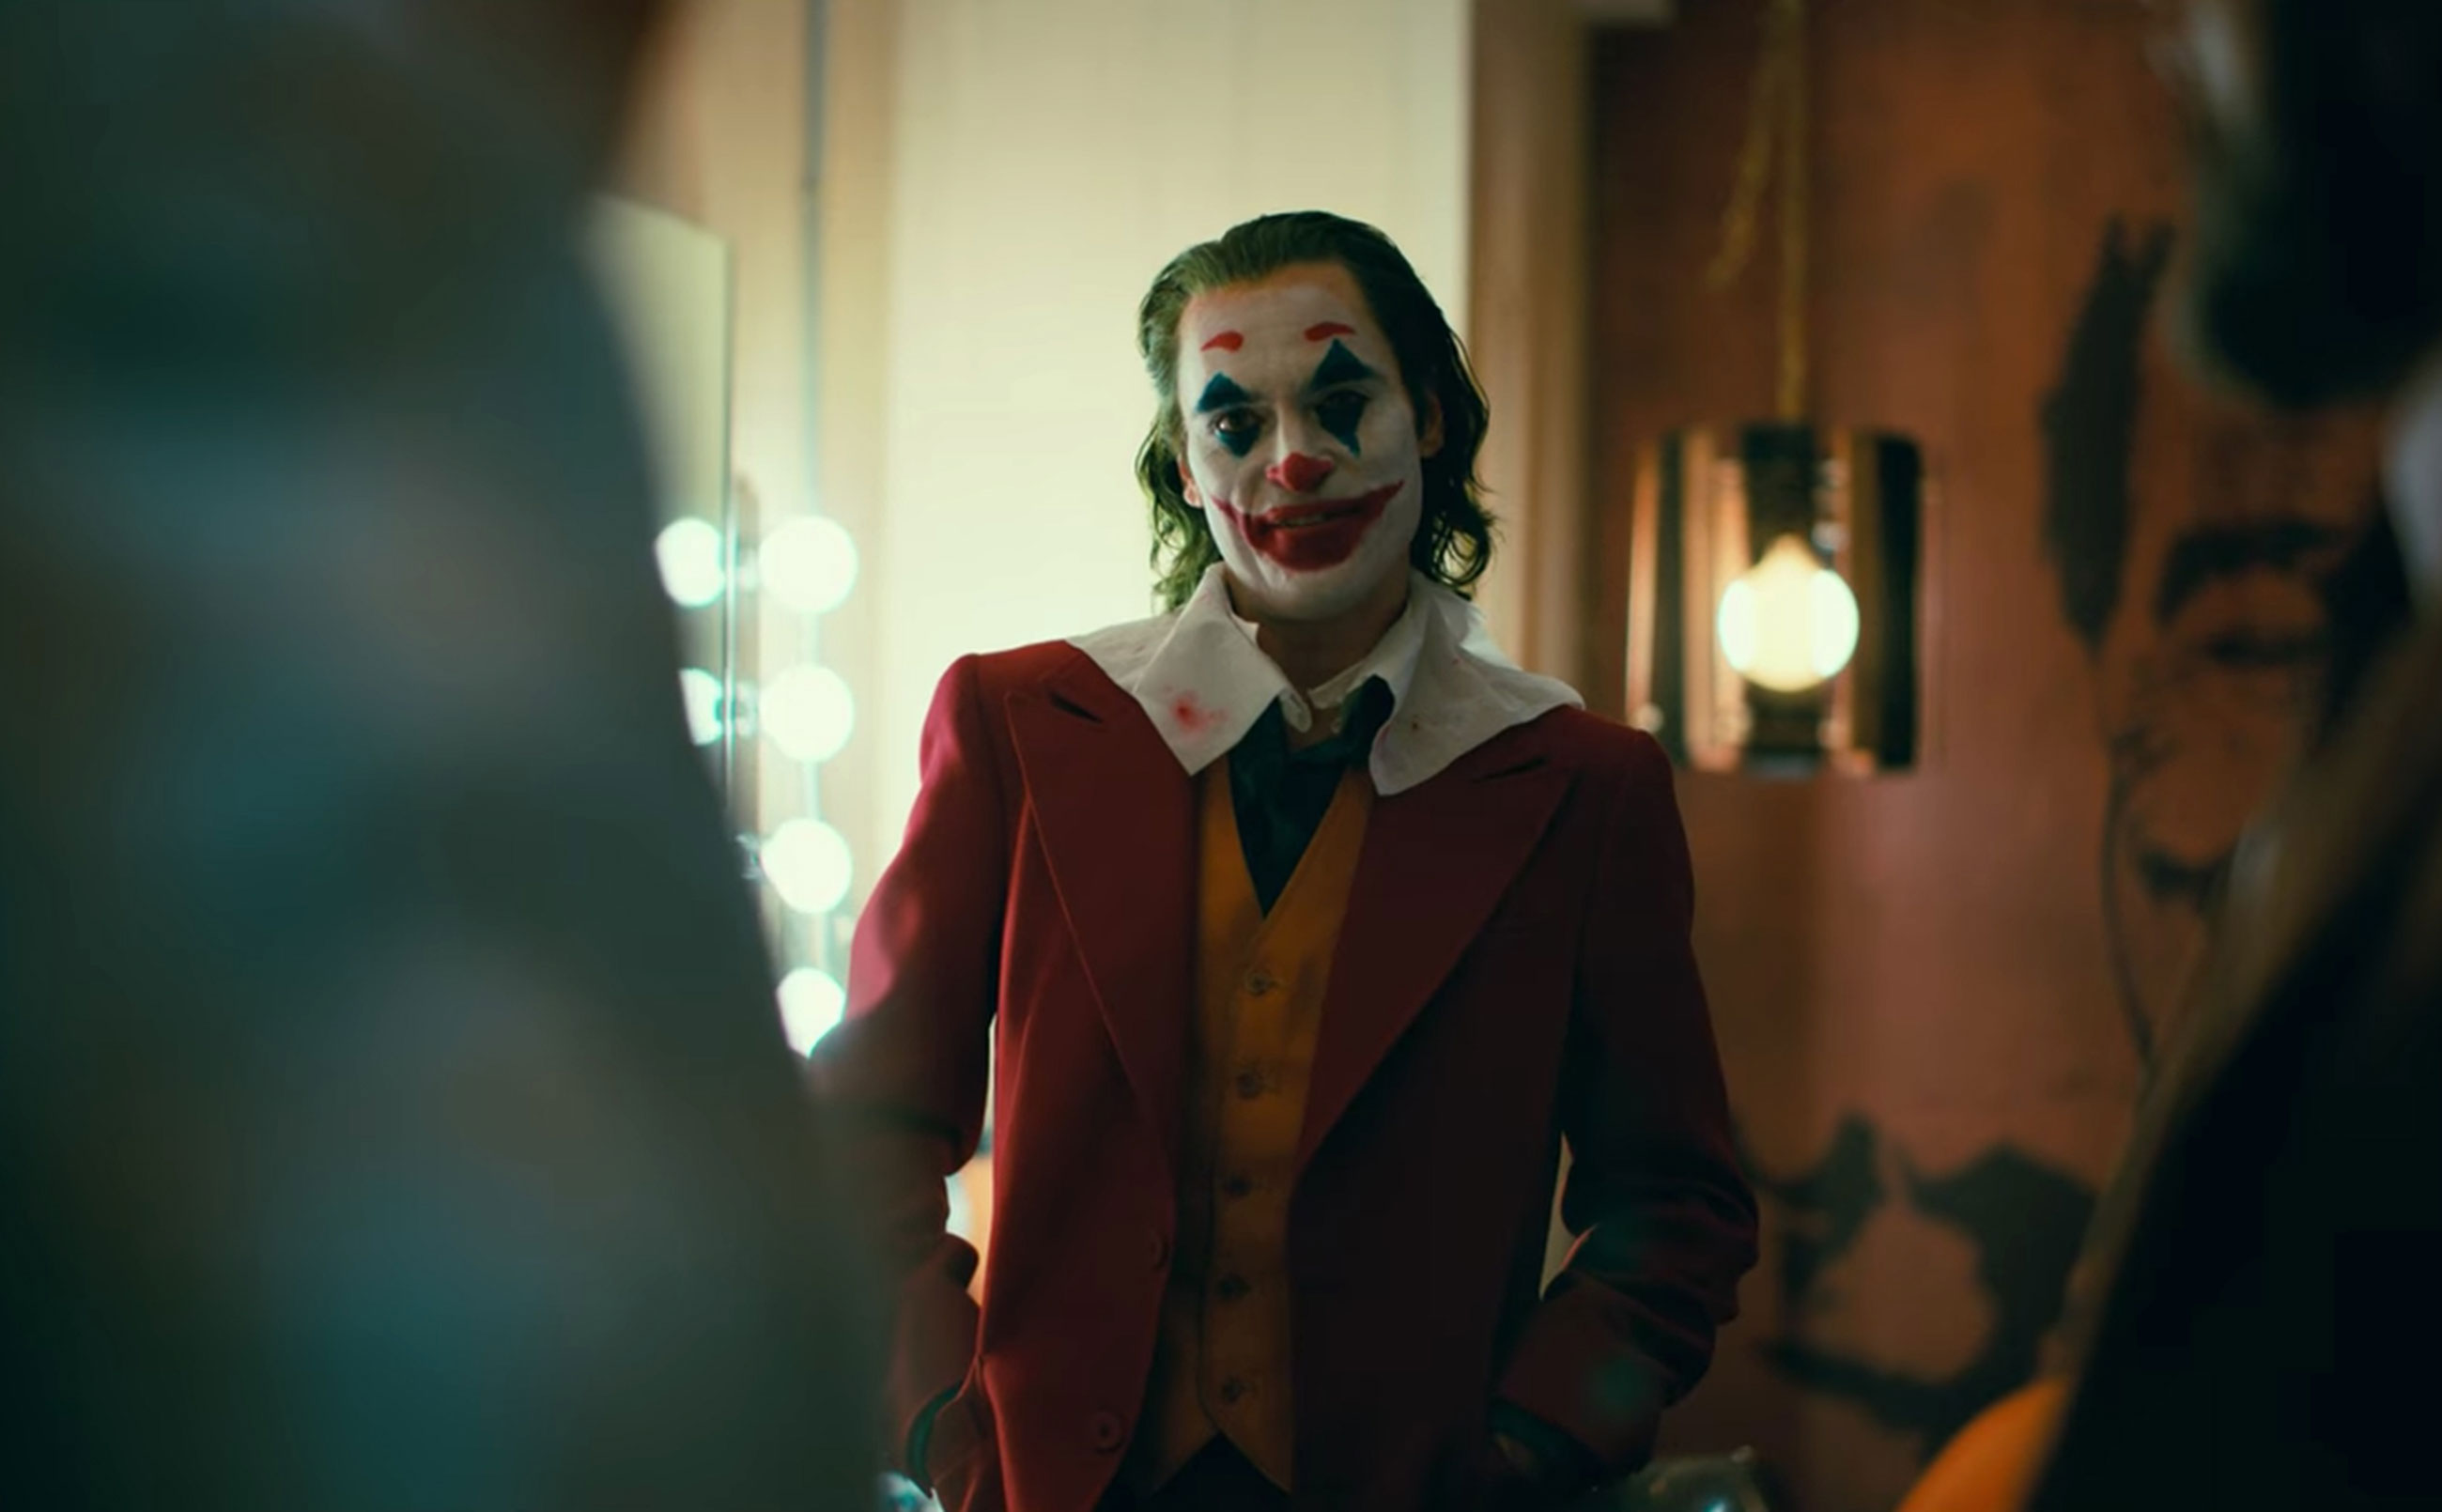 Mời xem trailer phim tiếp theo của Joker: Nỗi ám ảnh của Gotham, công chiếu ngày 4 tháng 10 sắp tới